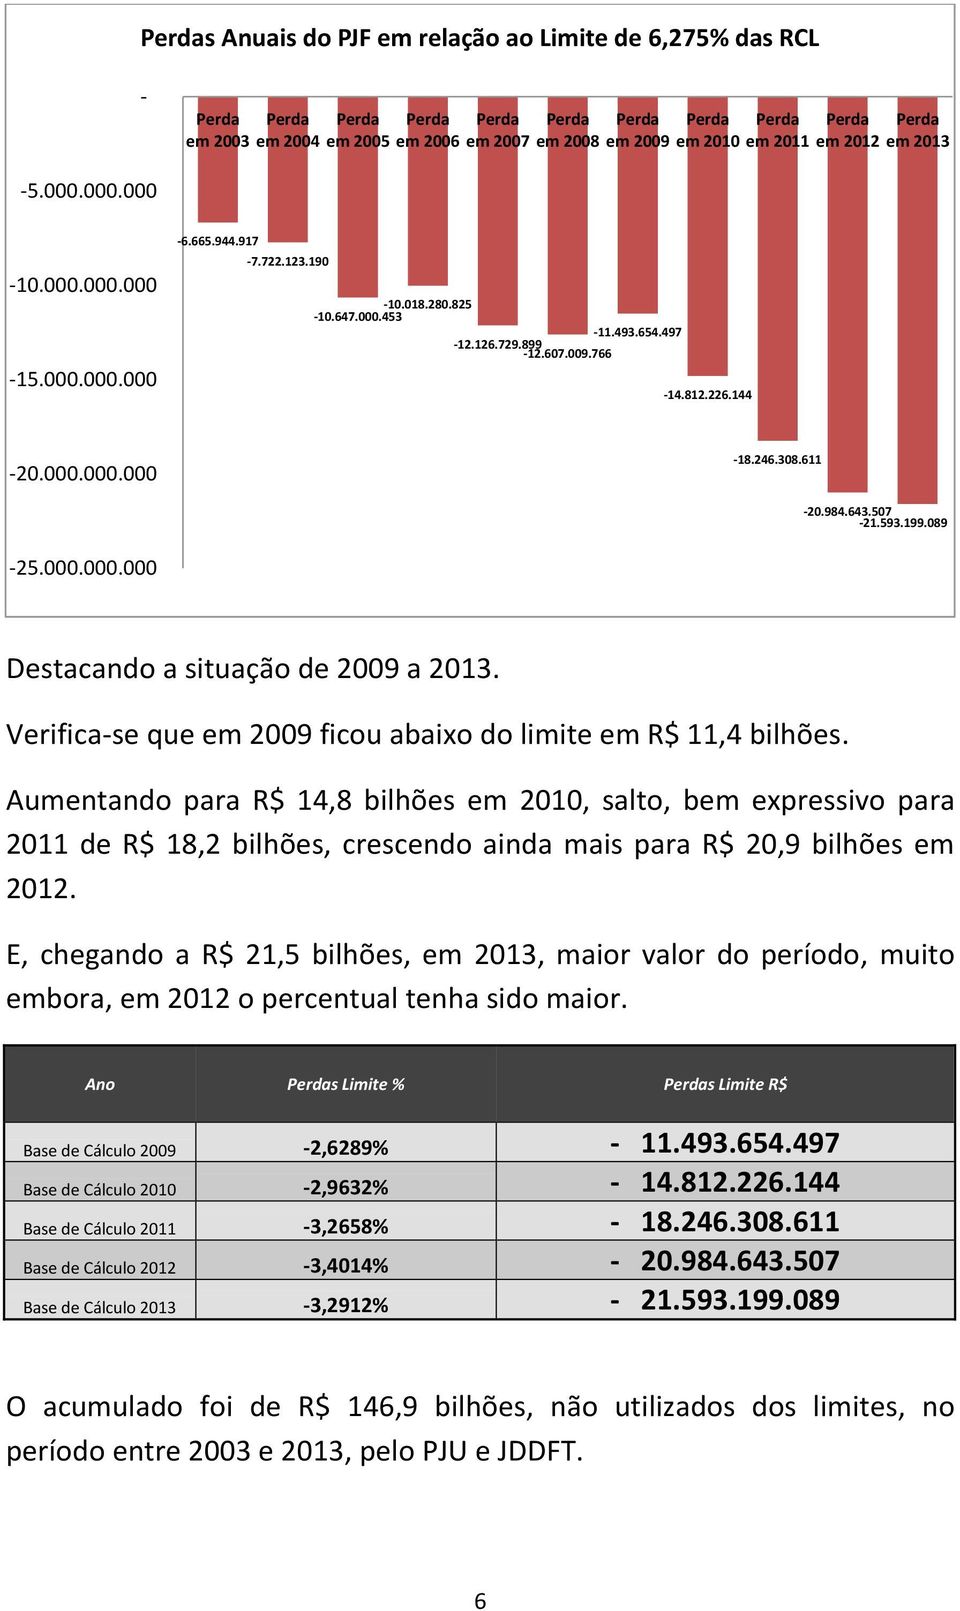 Verifica-se que em 2009 ficou abaixo do limite em R$ 11,4 bilhões.